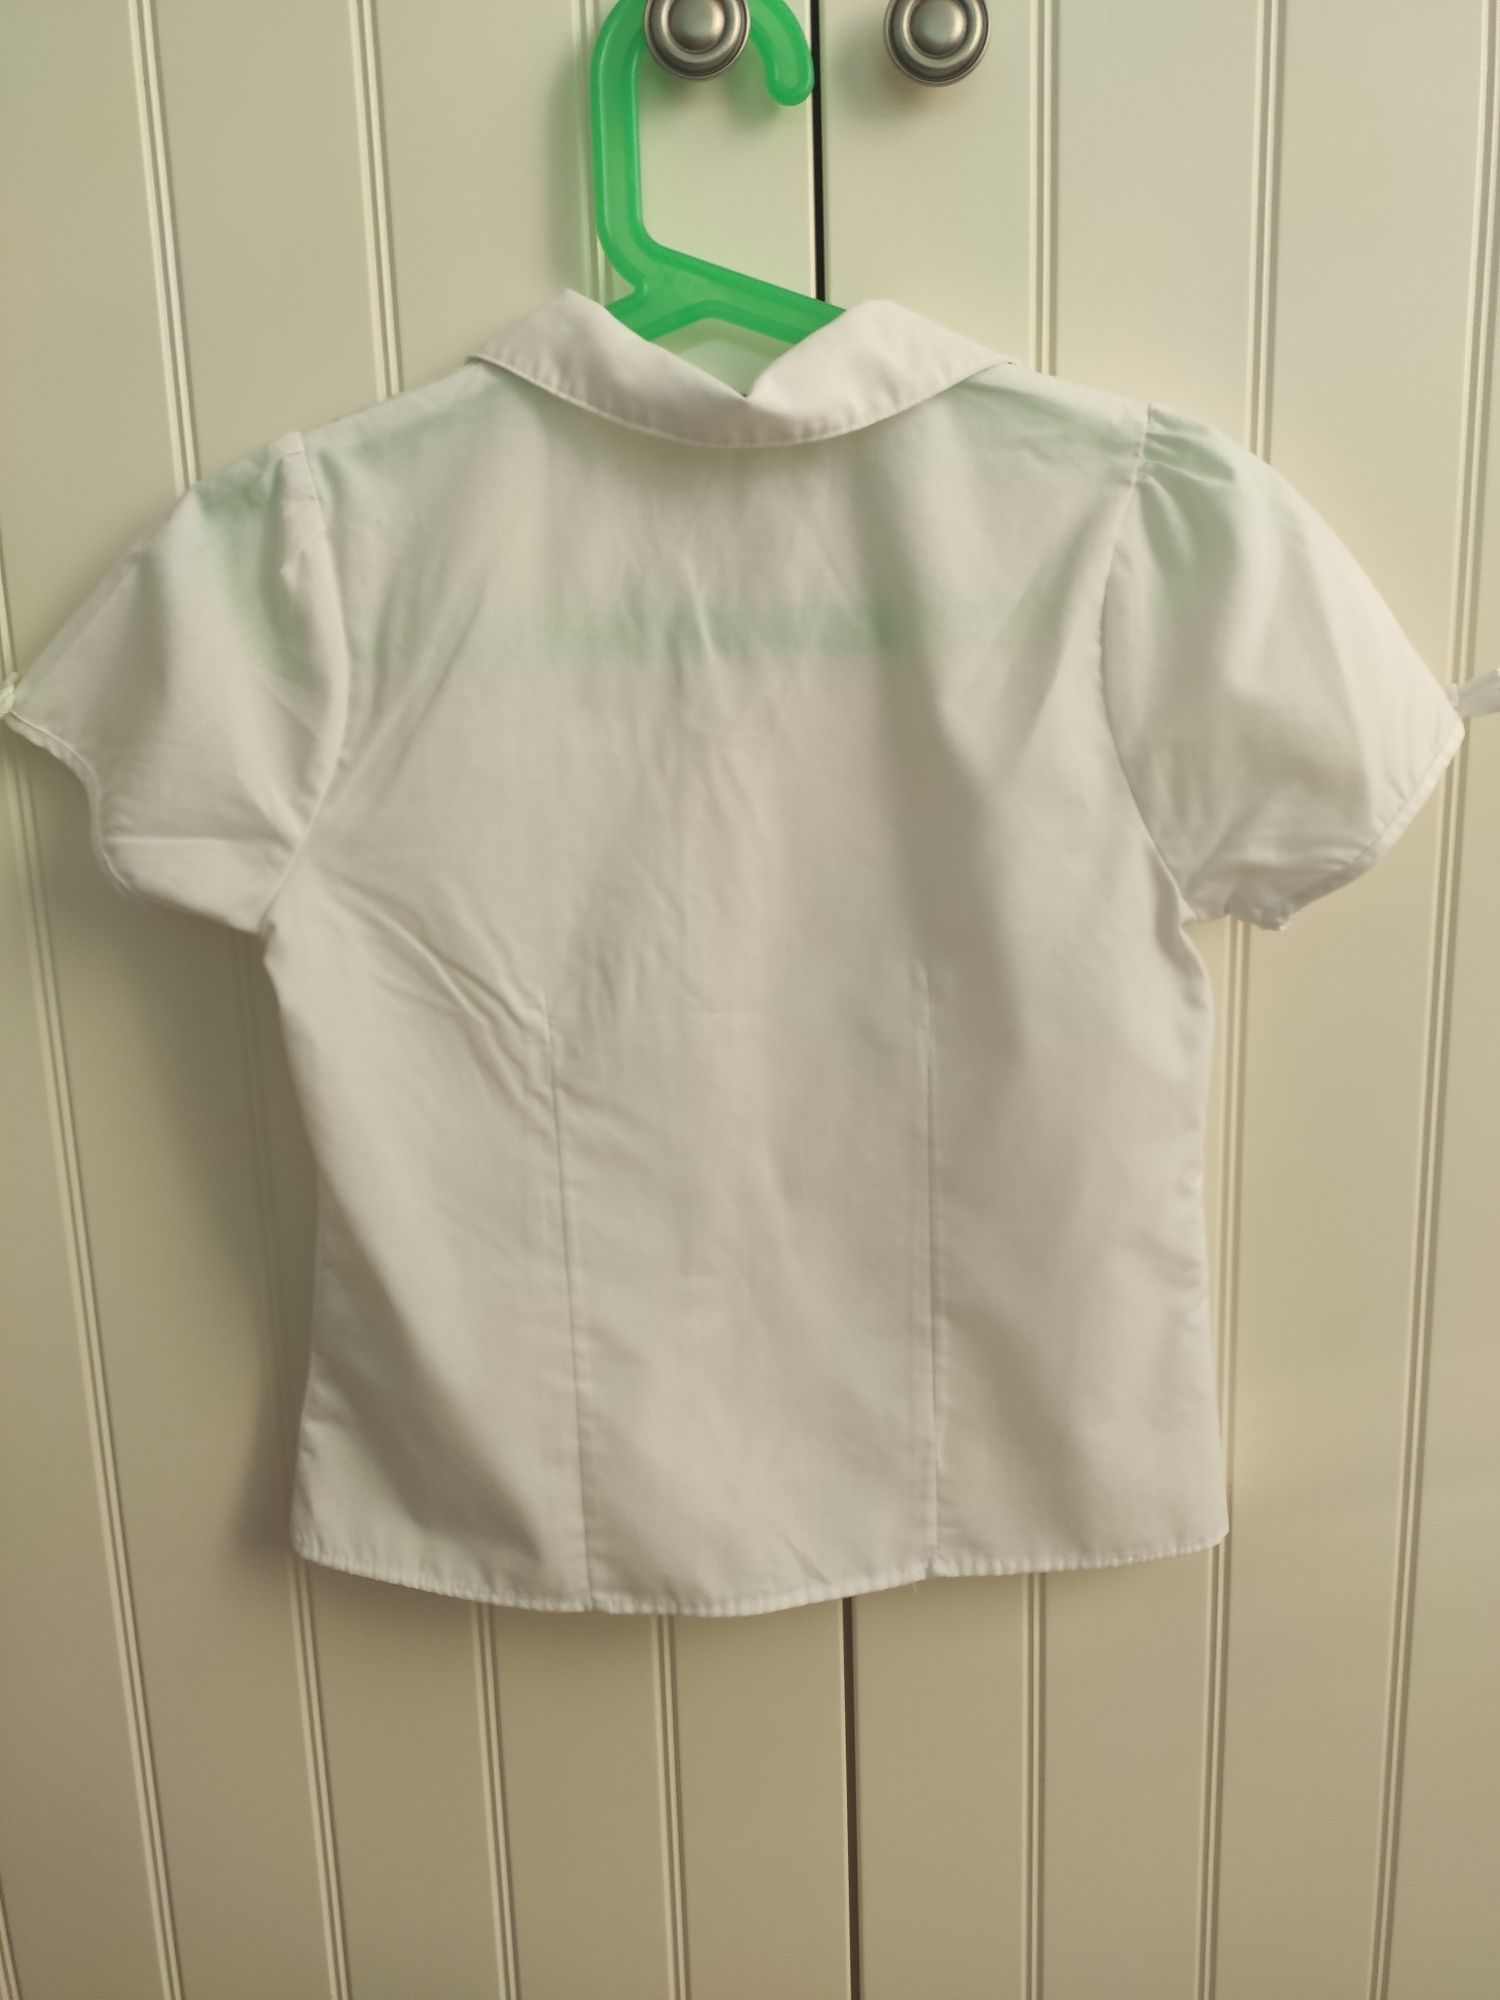 Bluzka biała koszula wizytowa strój galowy 110/116